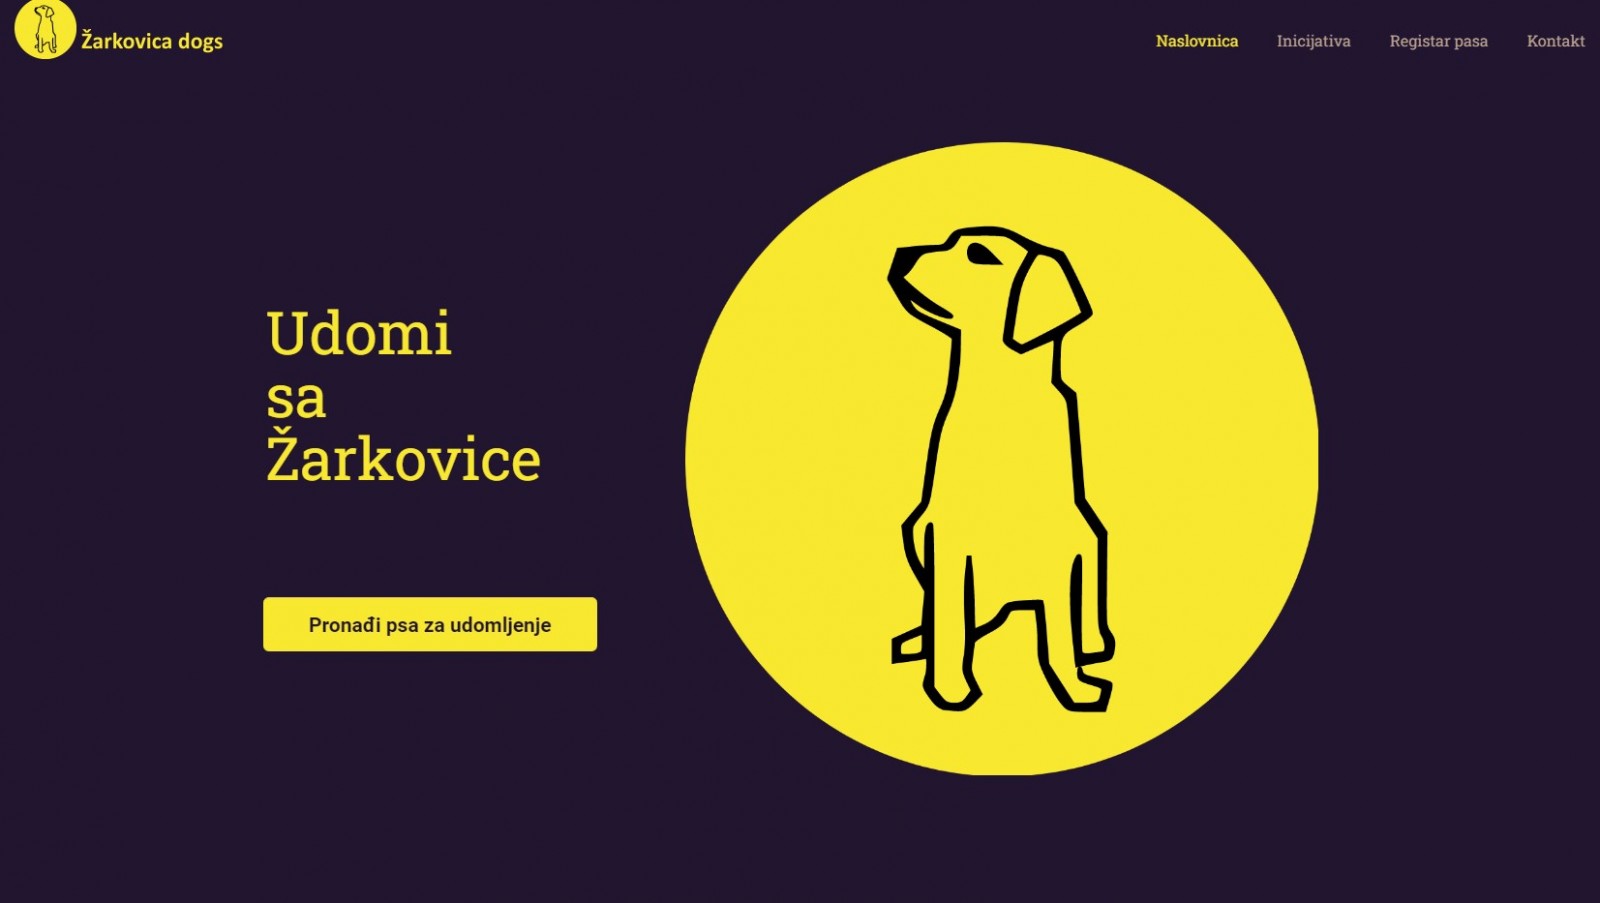 Zaprimljeno rješenje veterinarske inspekcije: Potrebno žurno izmještanje još 204 psa sa Žarkovice, rok 15 dana!